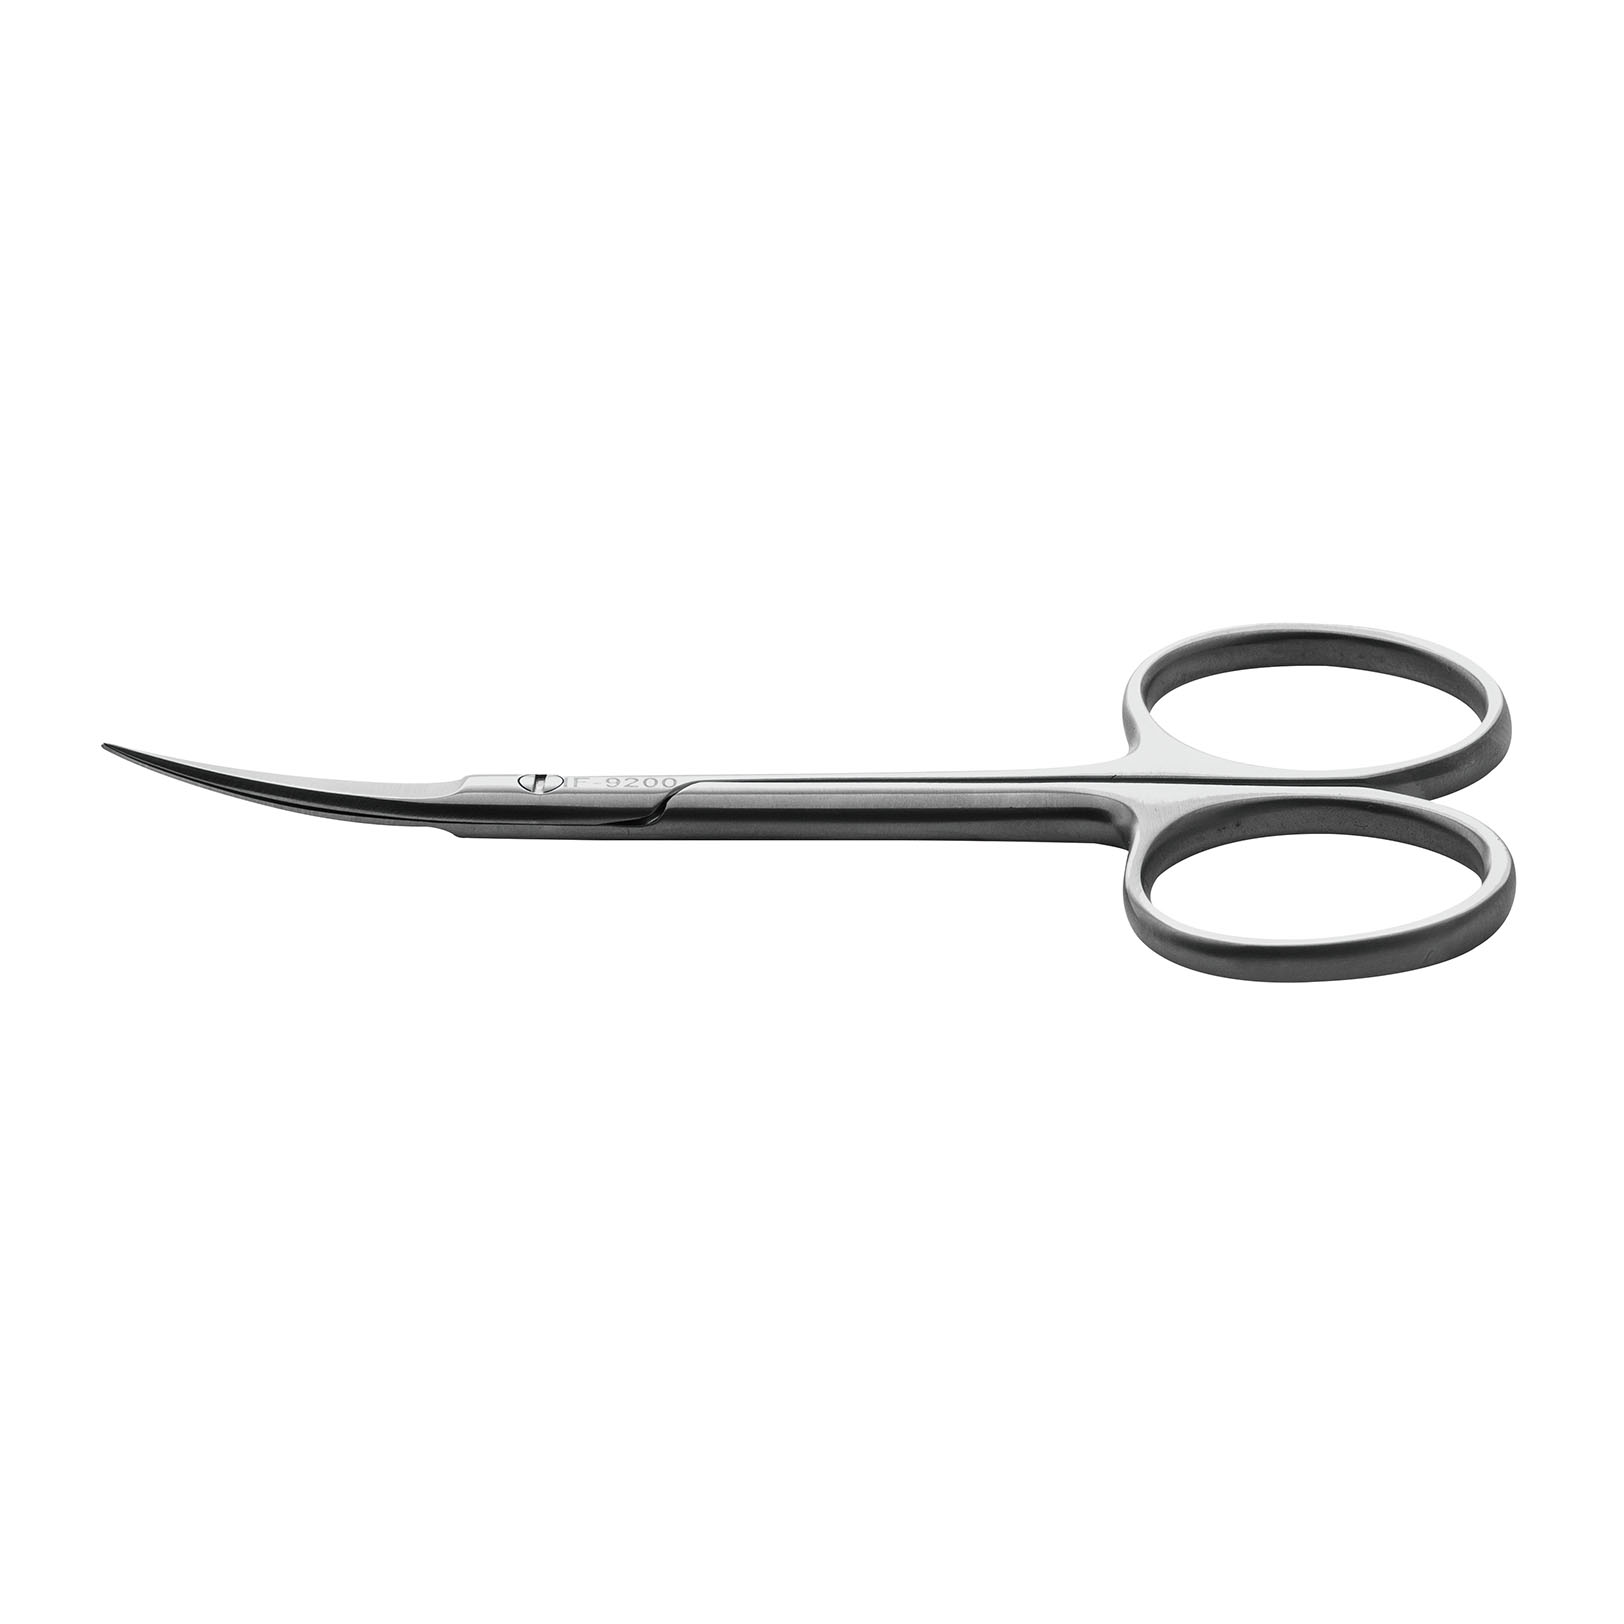 IF-9200不锈钢组织剪刀